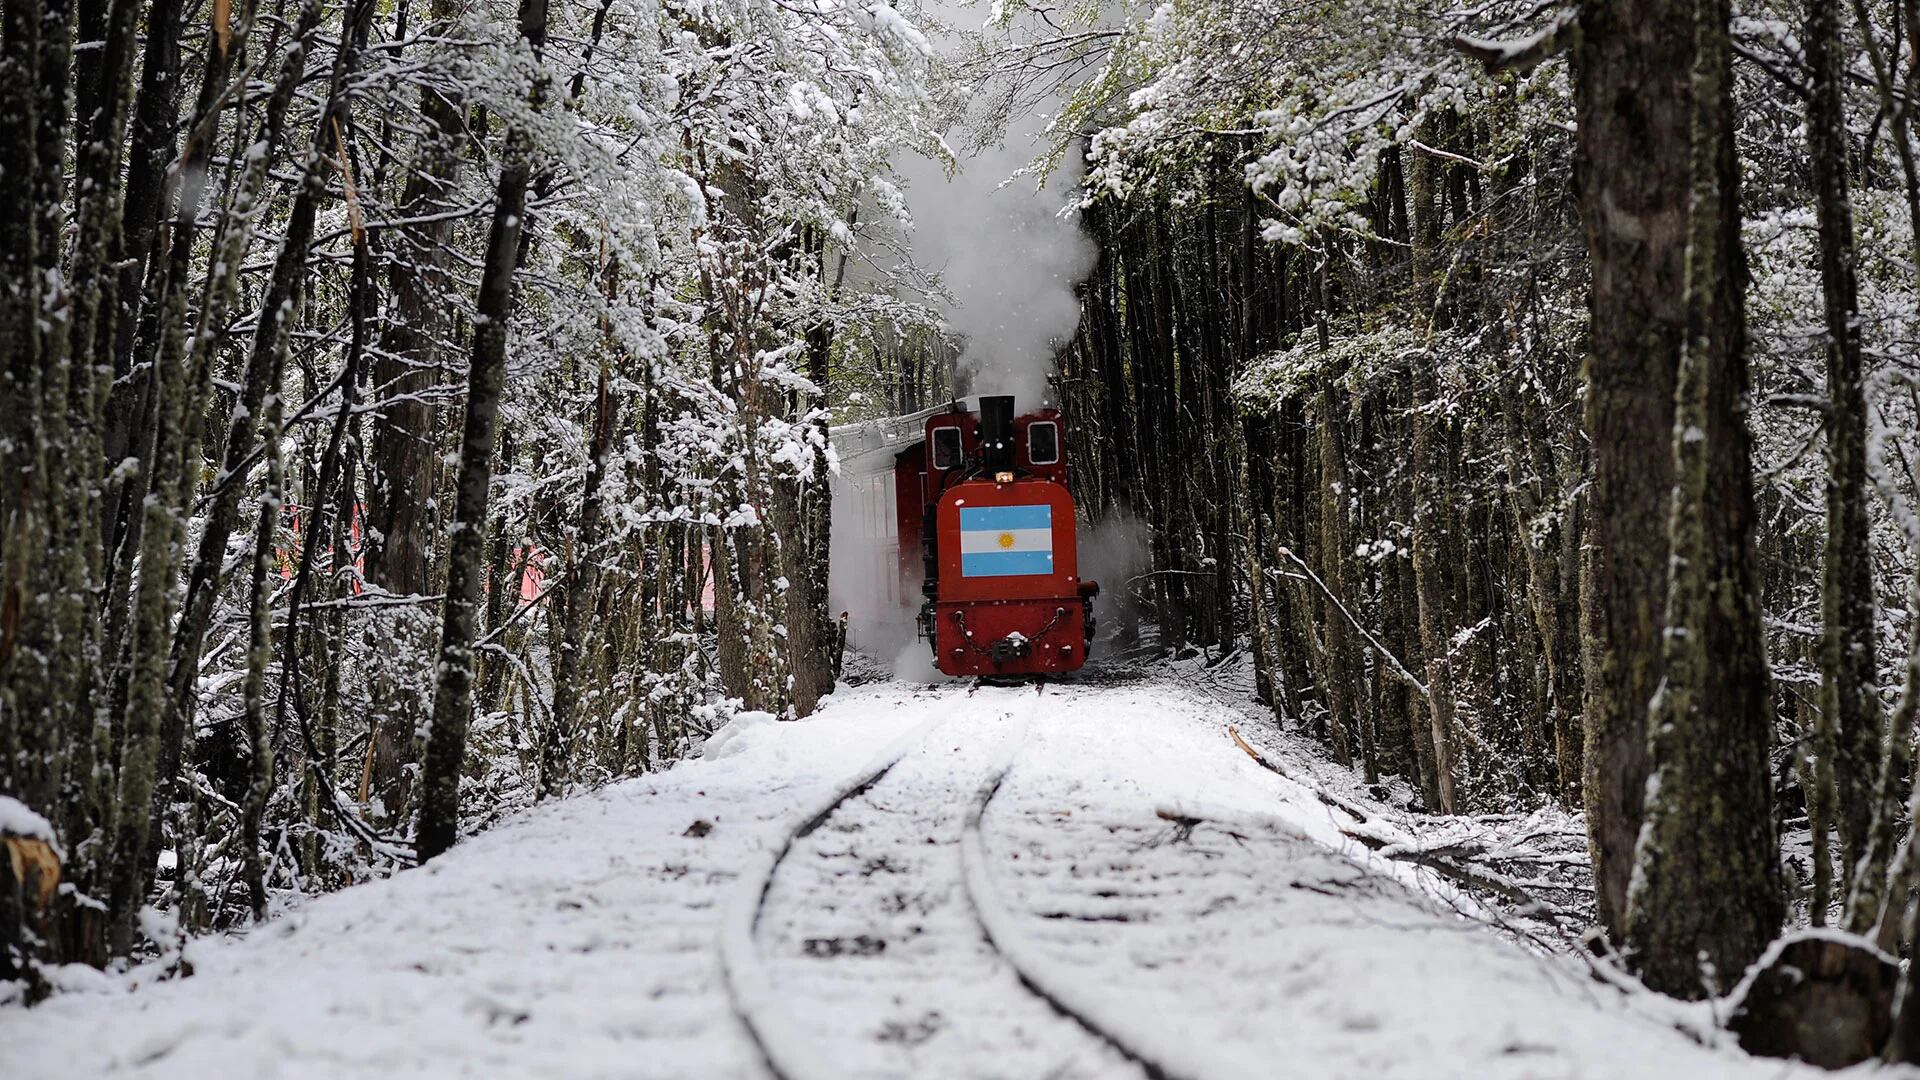 En pleno invierno, paisajes nevados con un encanto distinto. La estación está a unos 8 km del centro de la ciudad (Facundo Santana)